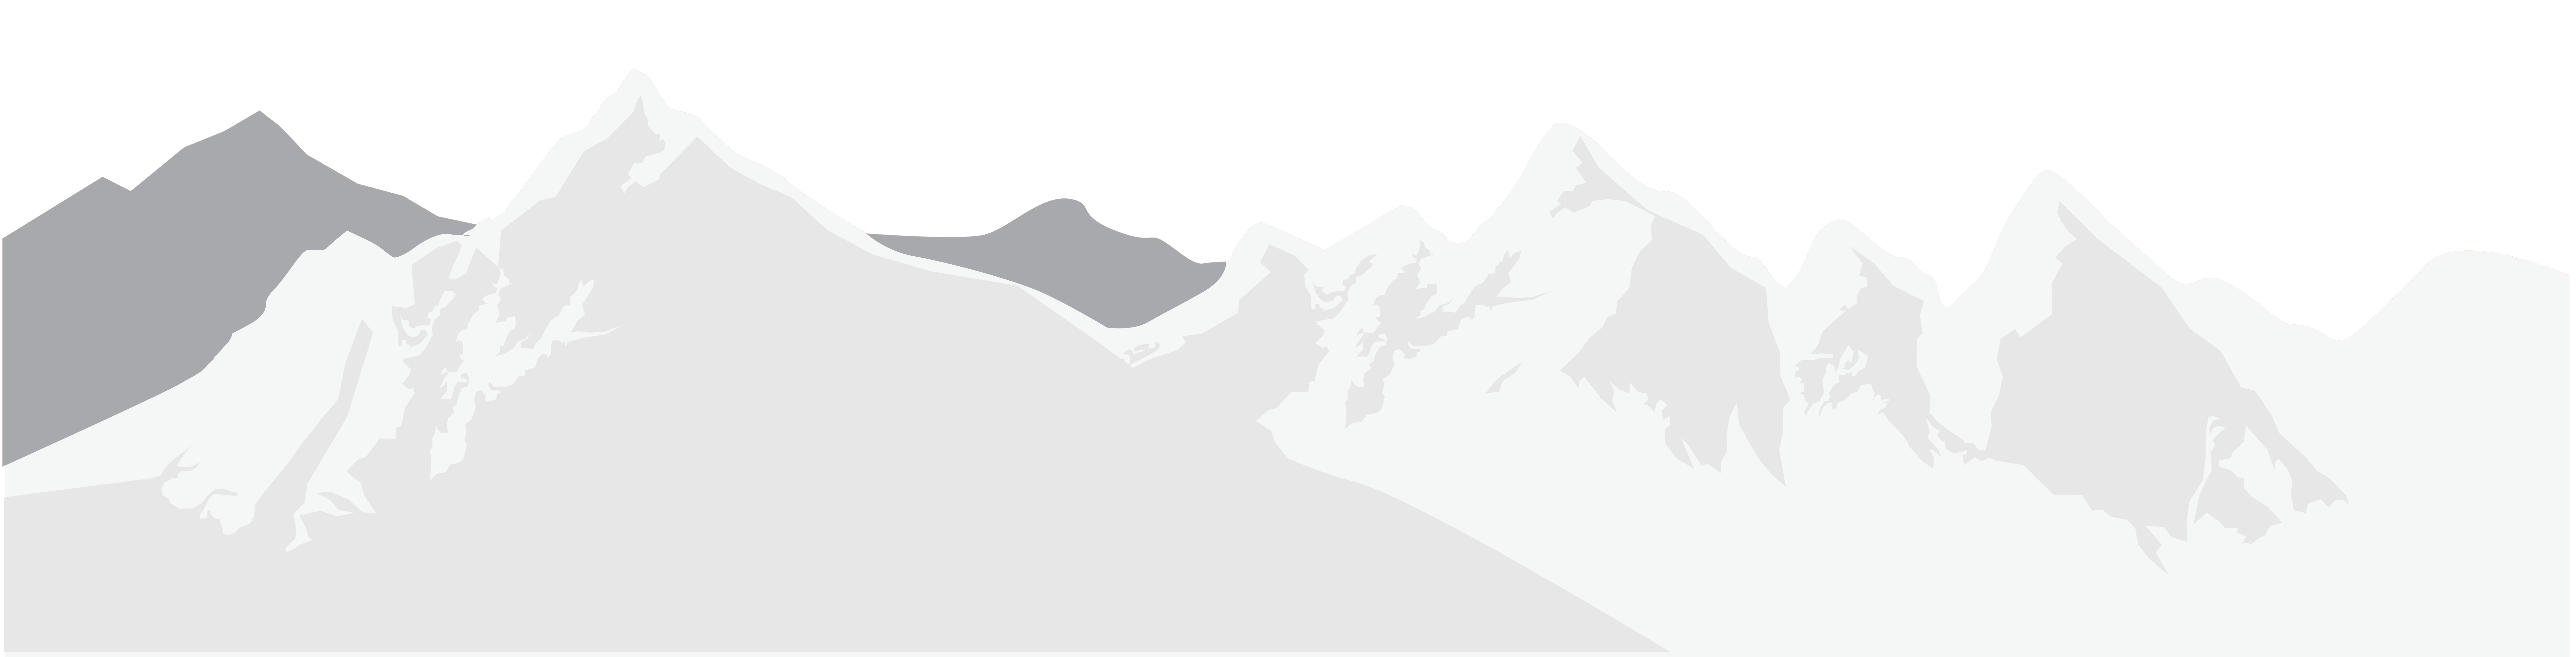 GLISI-Mountain-Range-(Transparent)